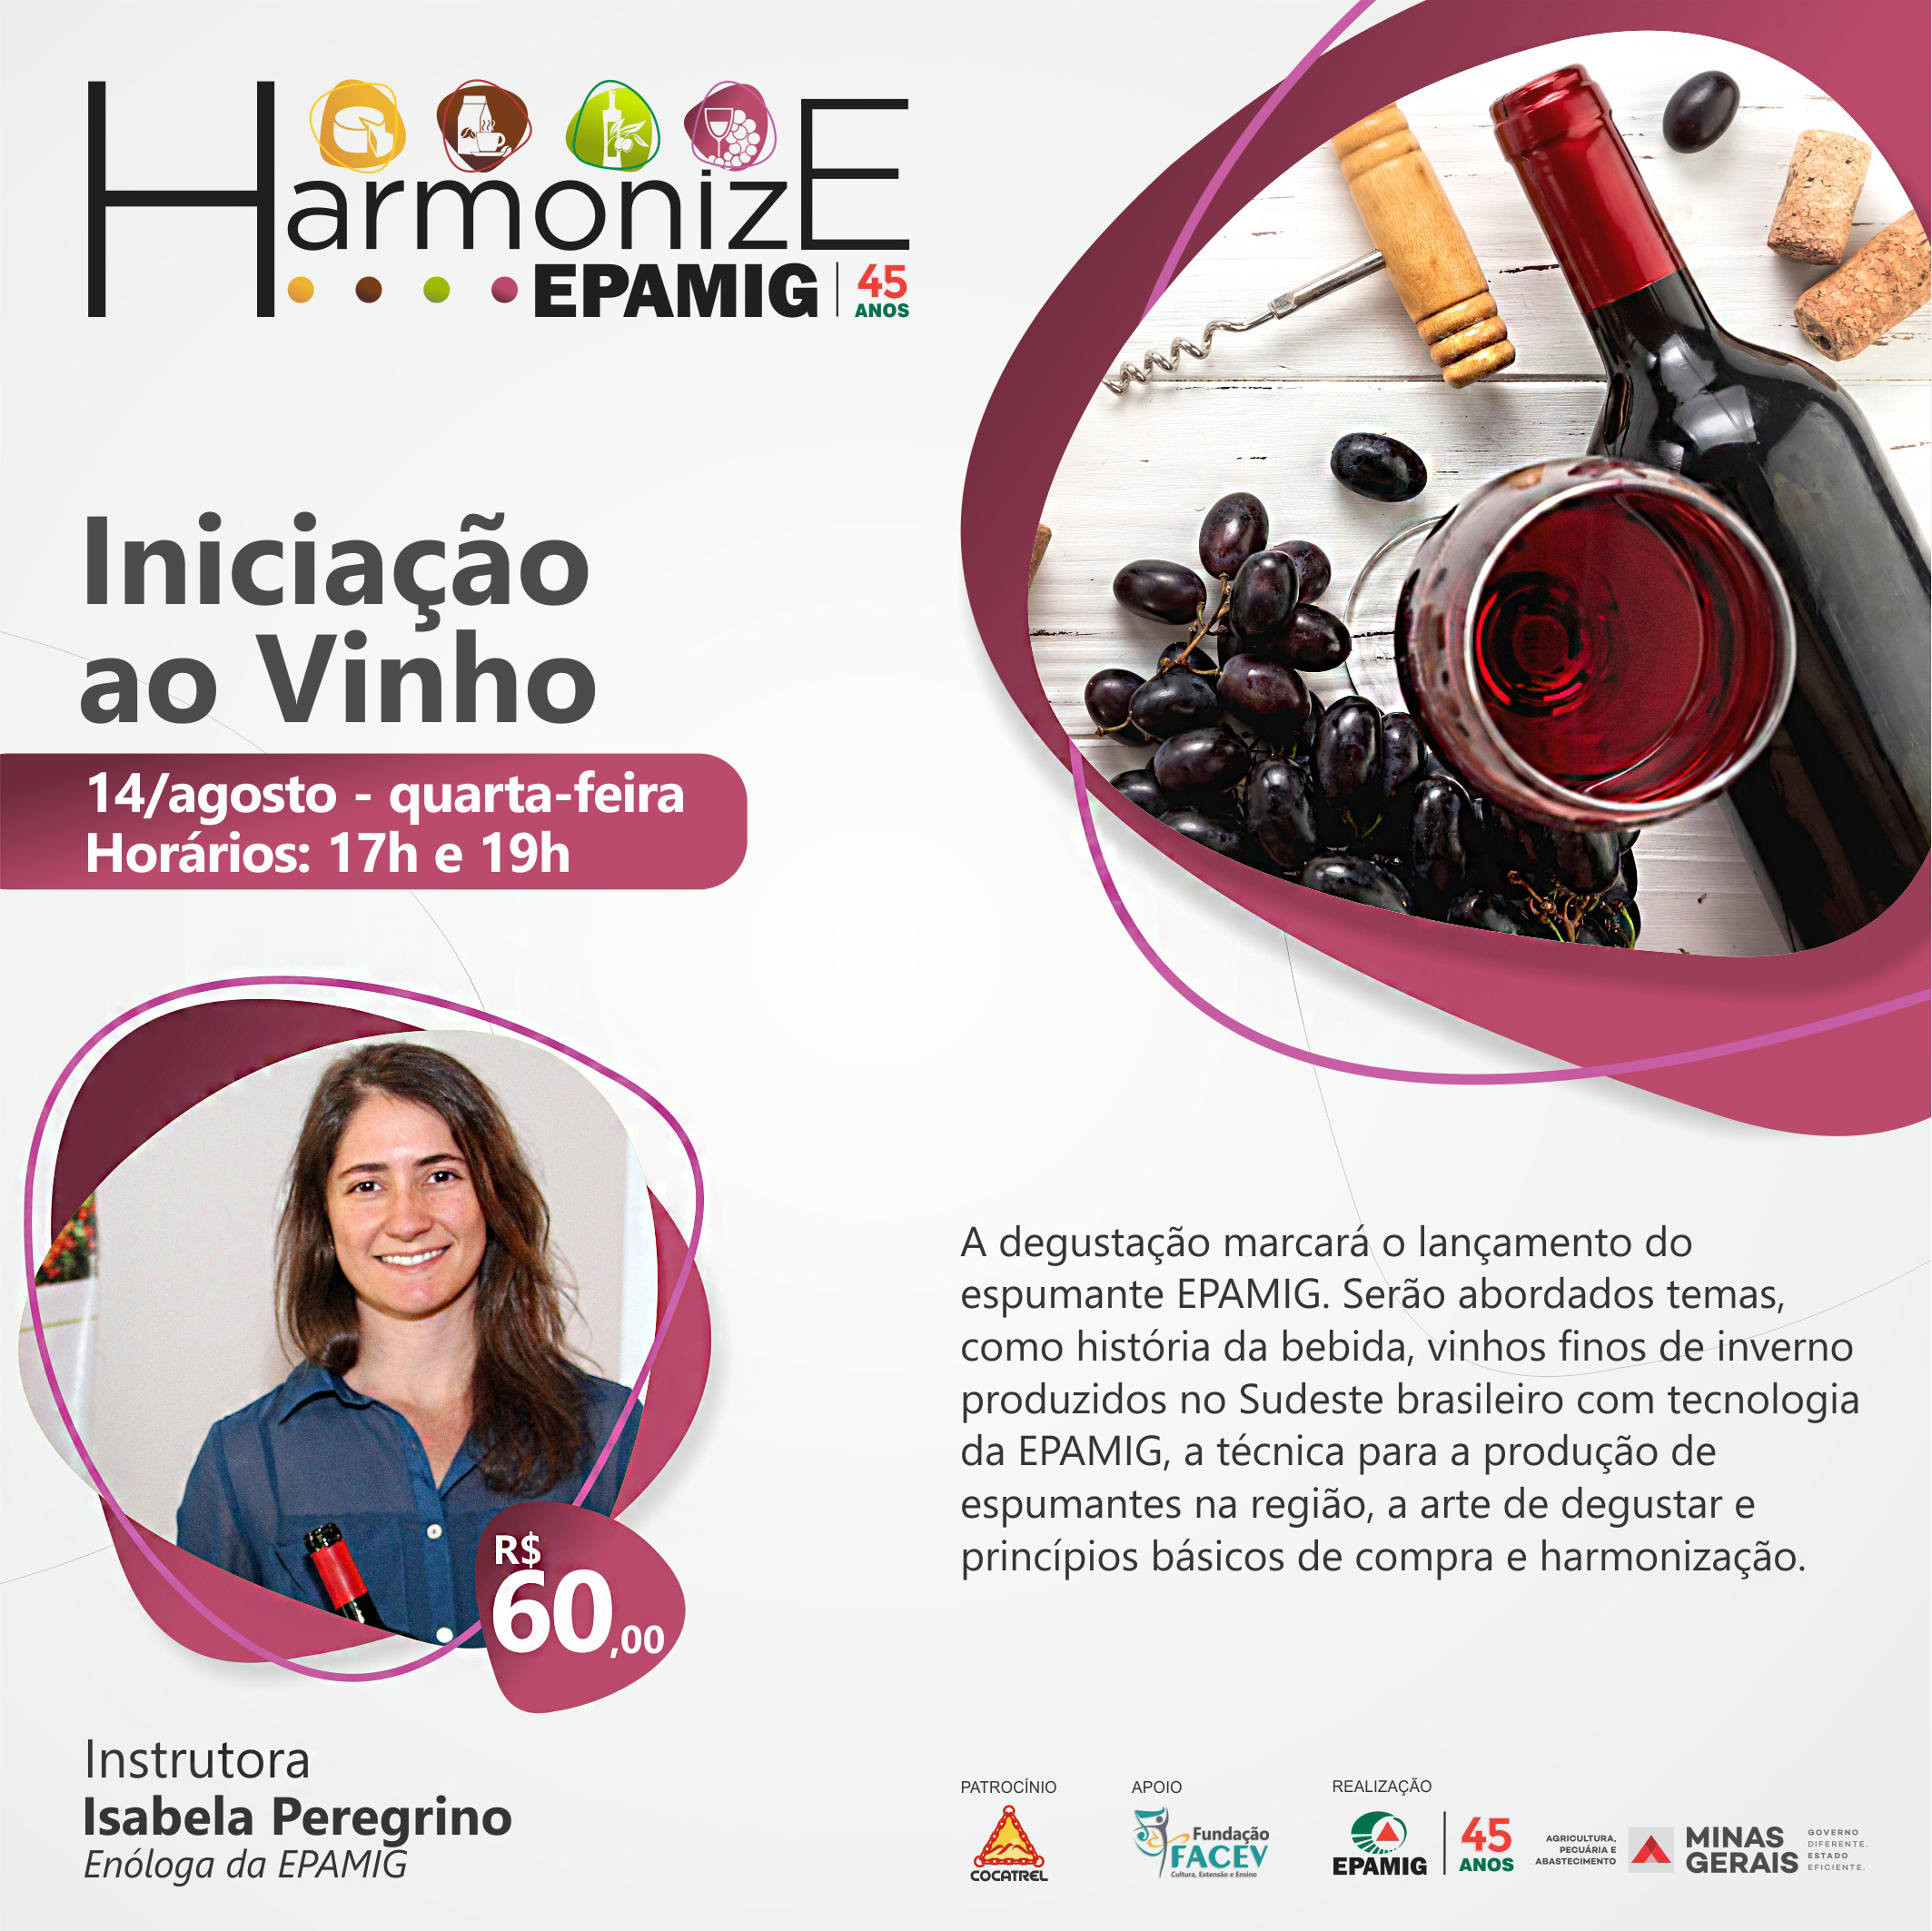 02 - Harmonize EPAMIG 2019 - Cards Redes Sociais_Vinhos